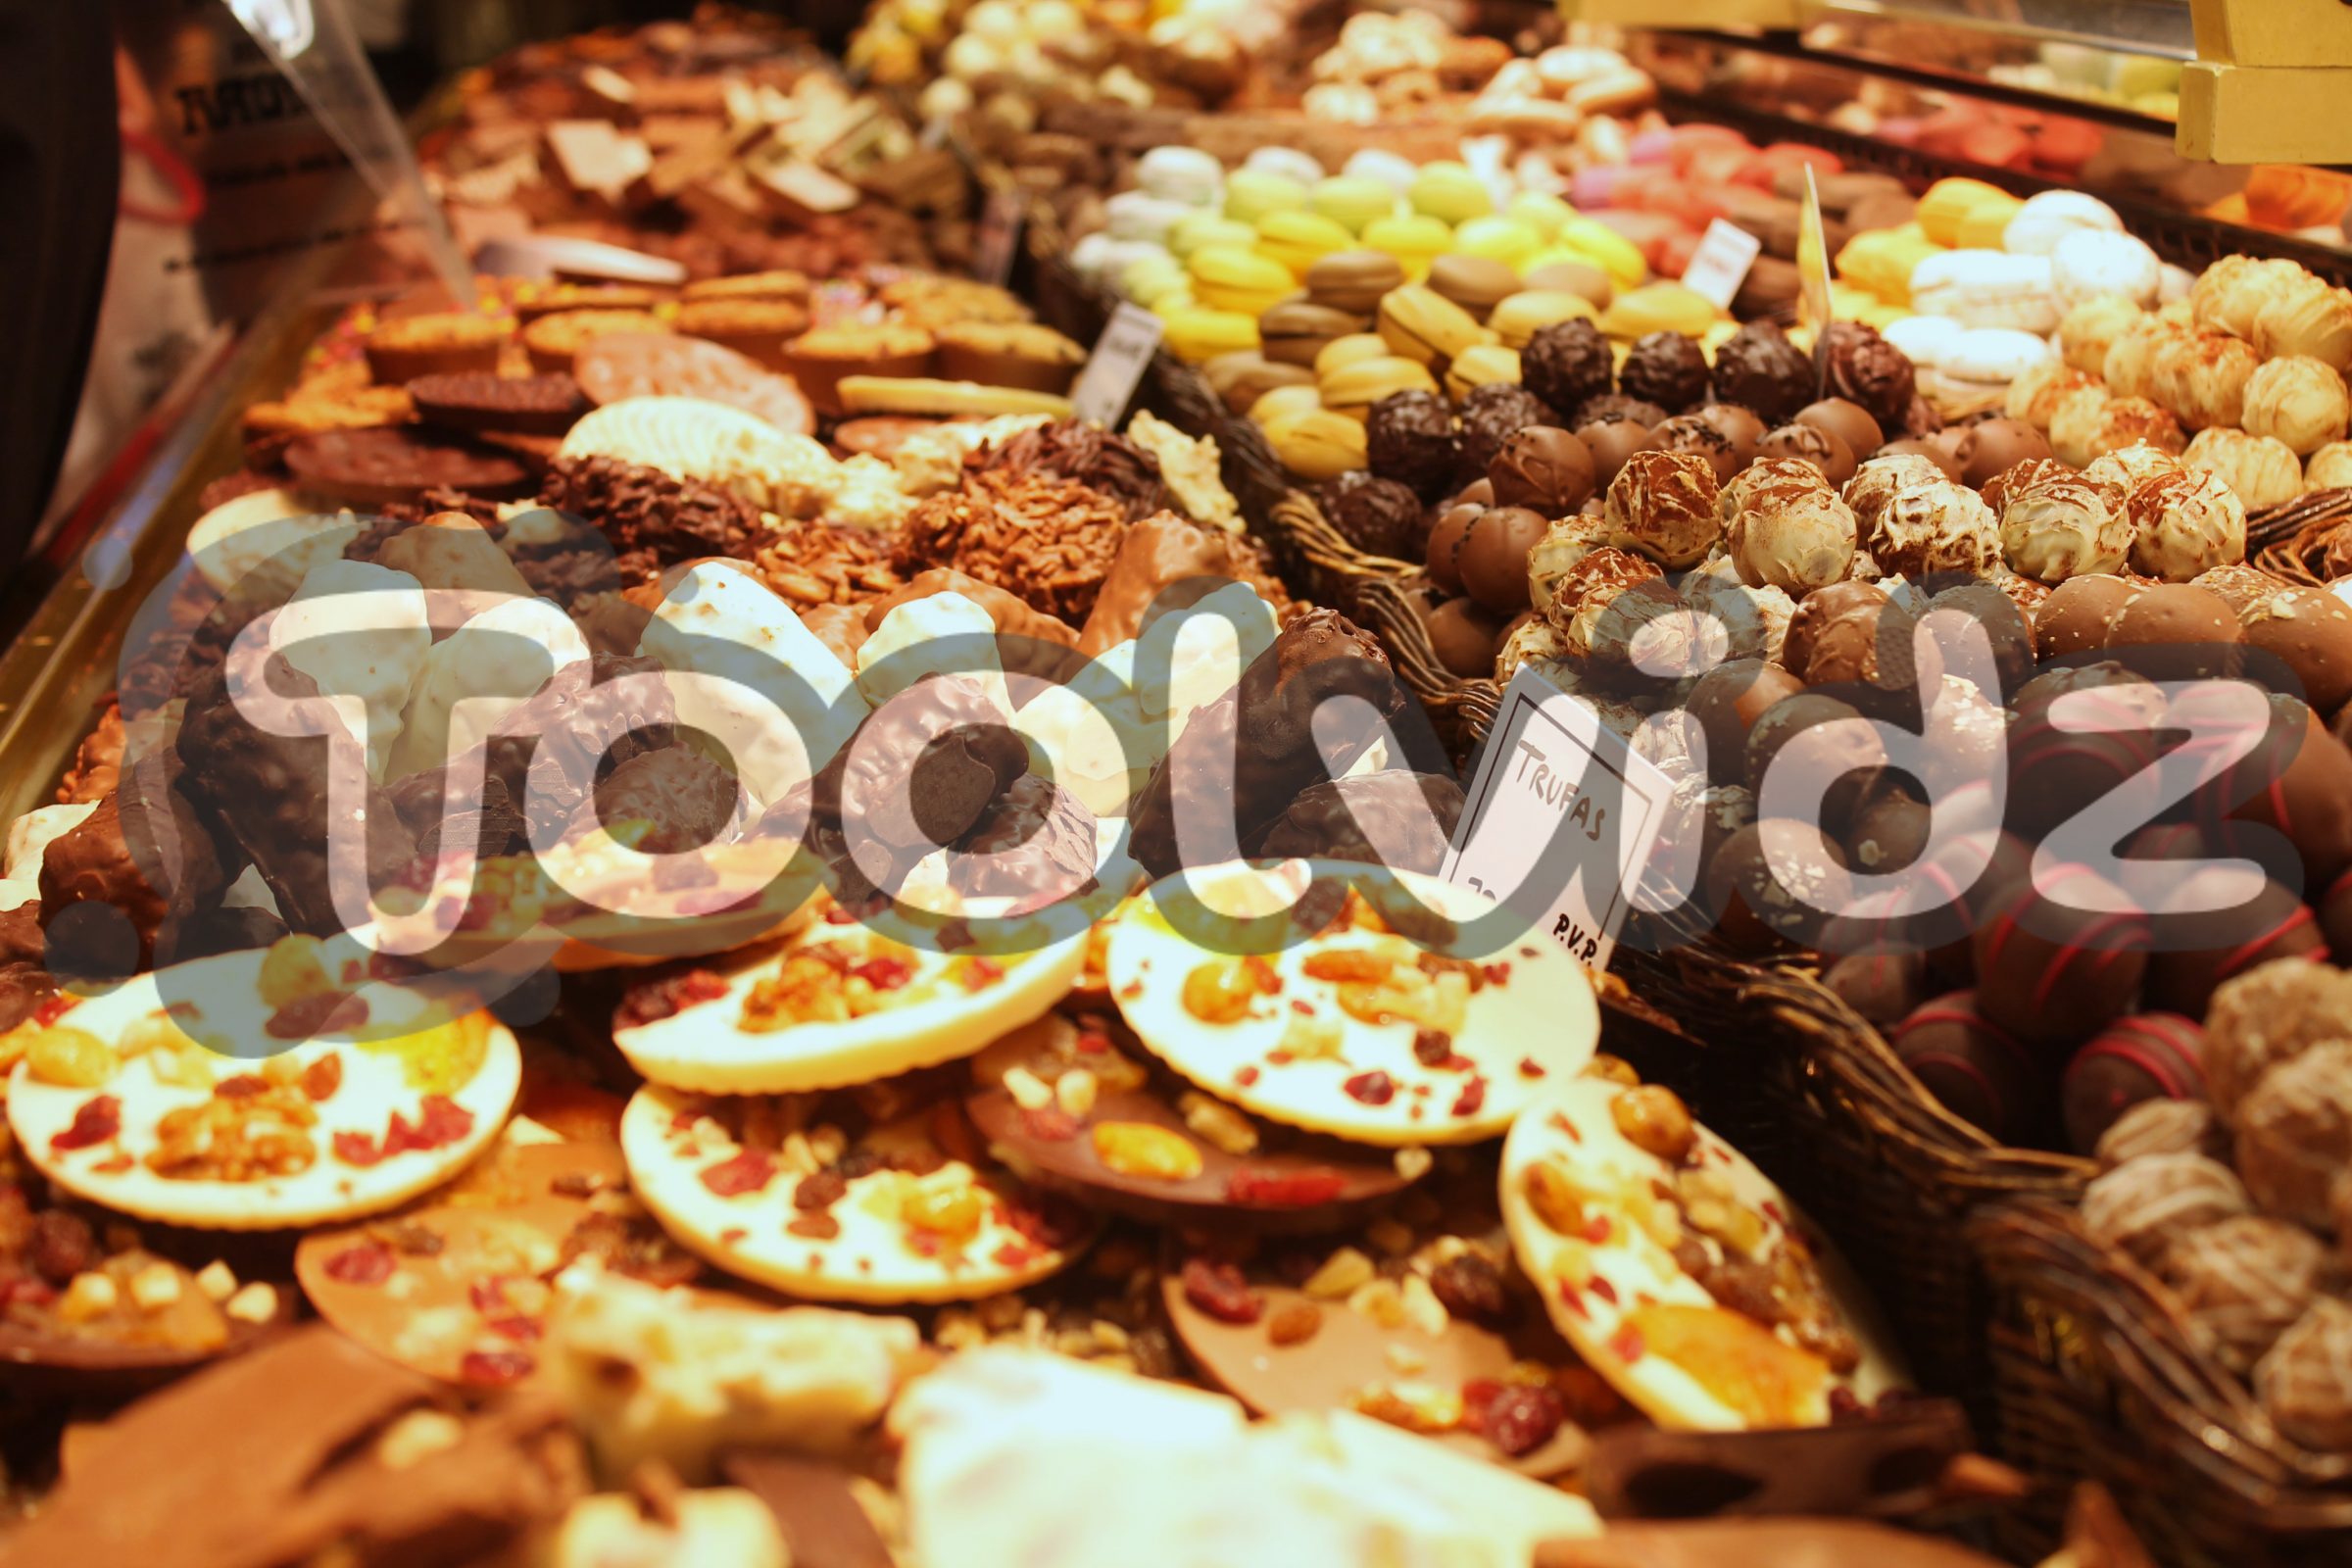 Tanti dolci al cioccolato, frutta e crema su una bancarella di un mercato spagnolo